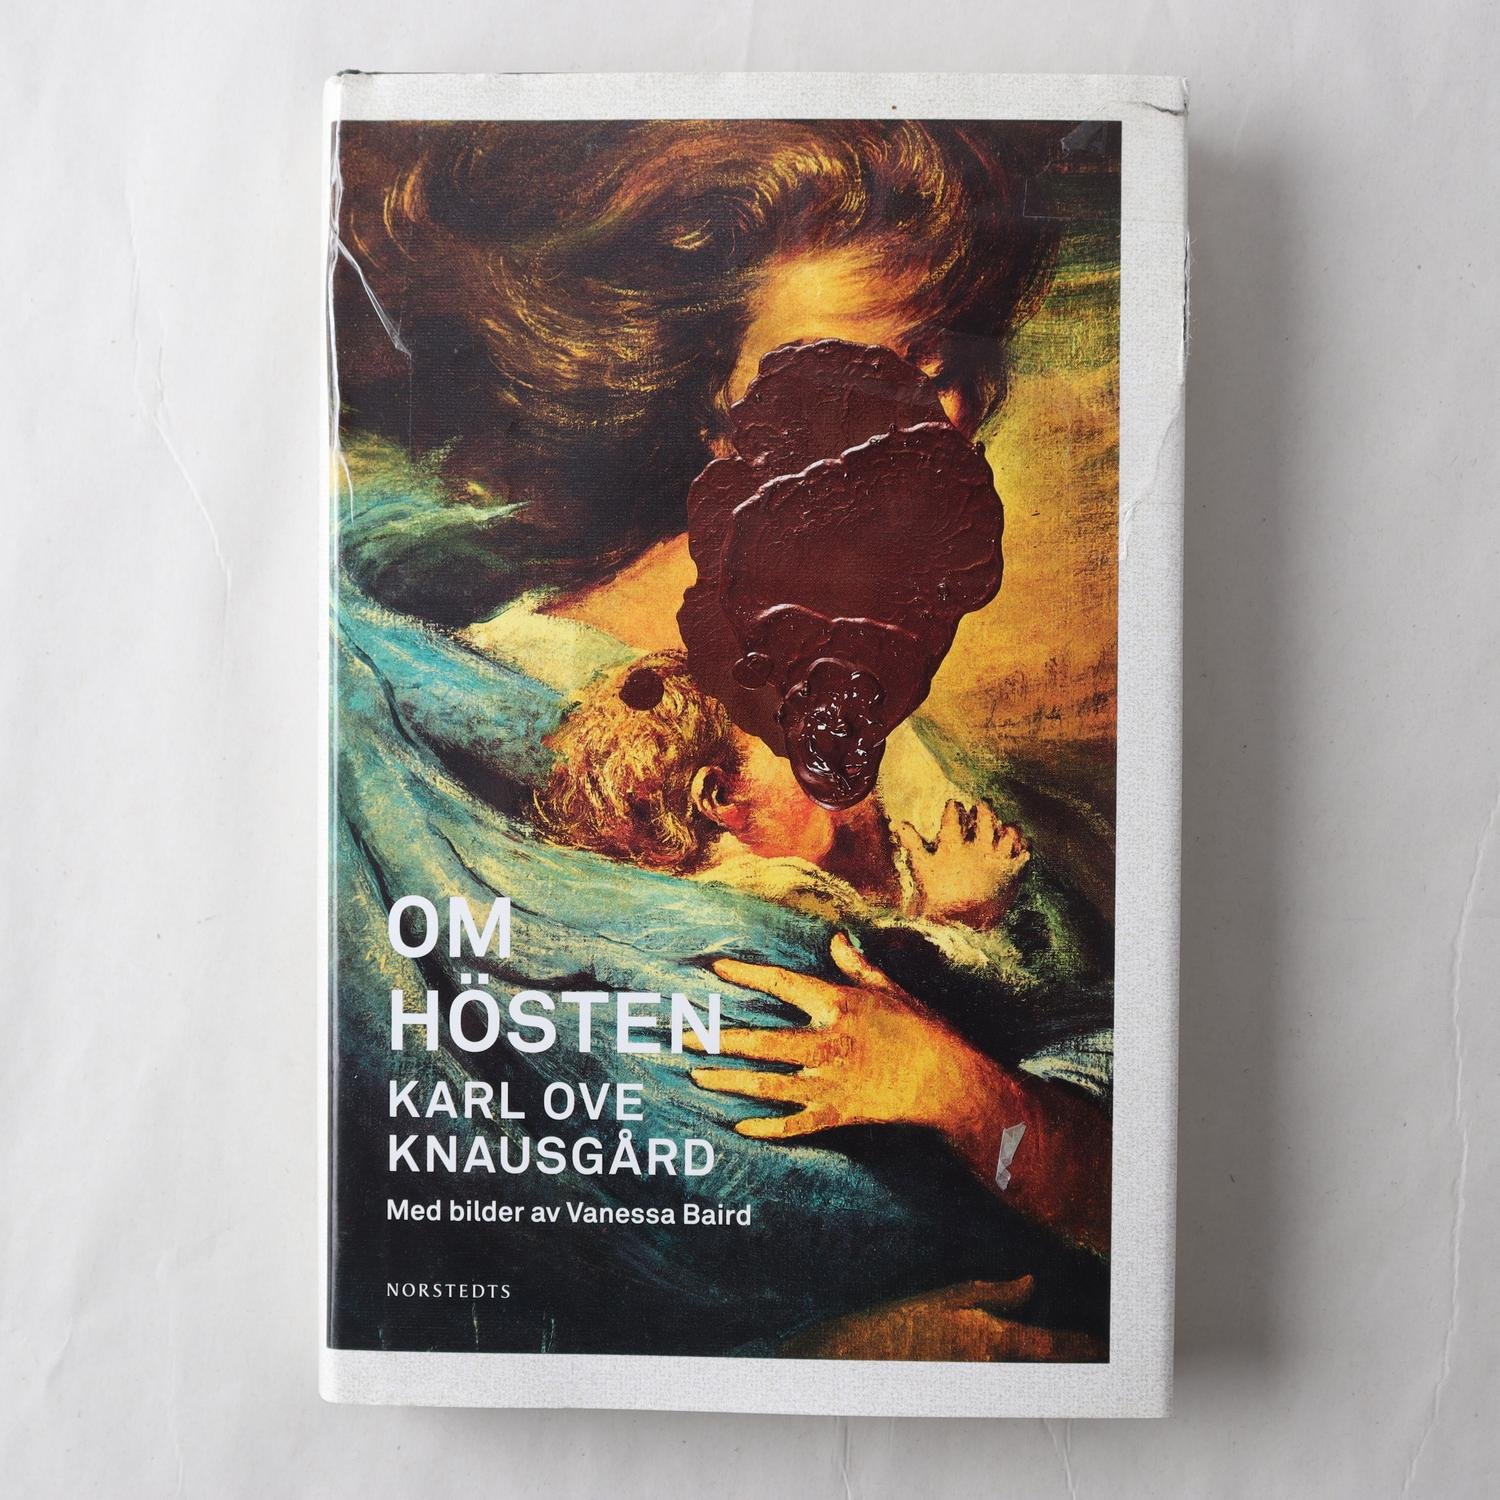 Karl Ove Knausgård, Om hösten, med bilder av Vanessa Baird